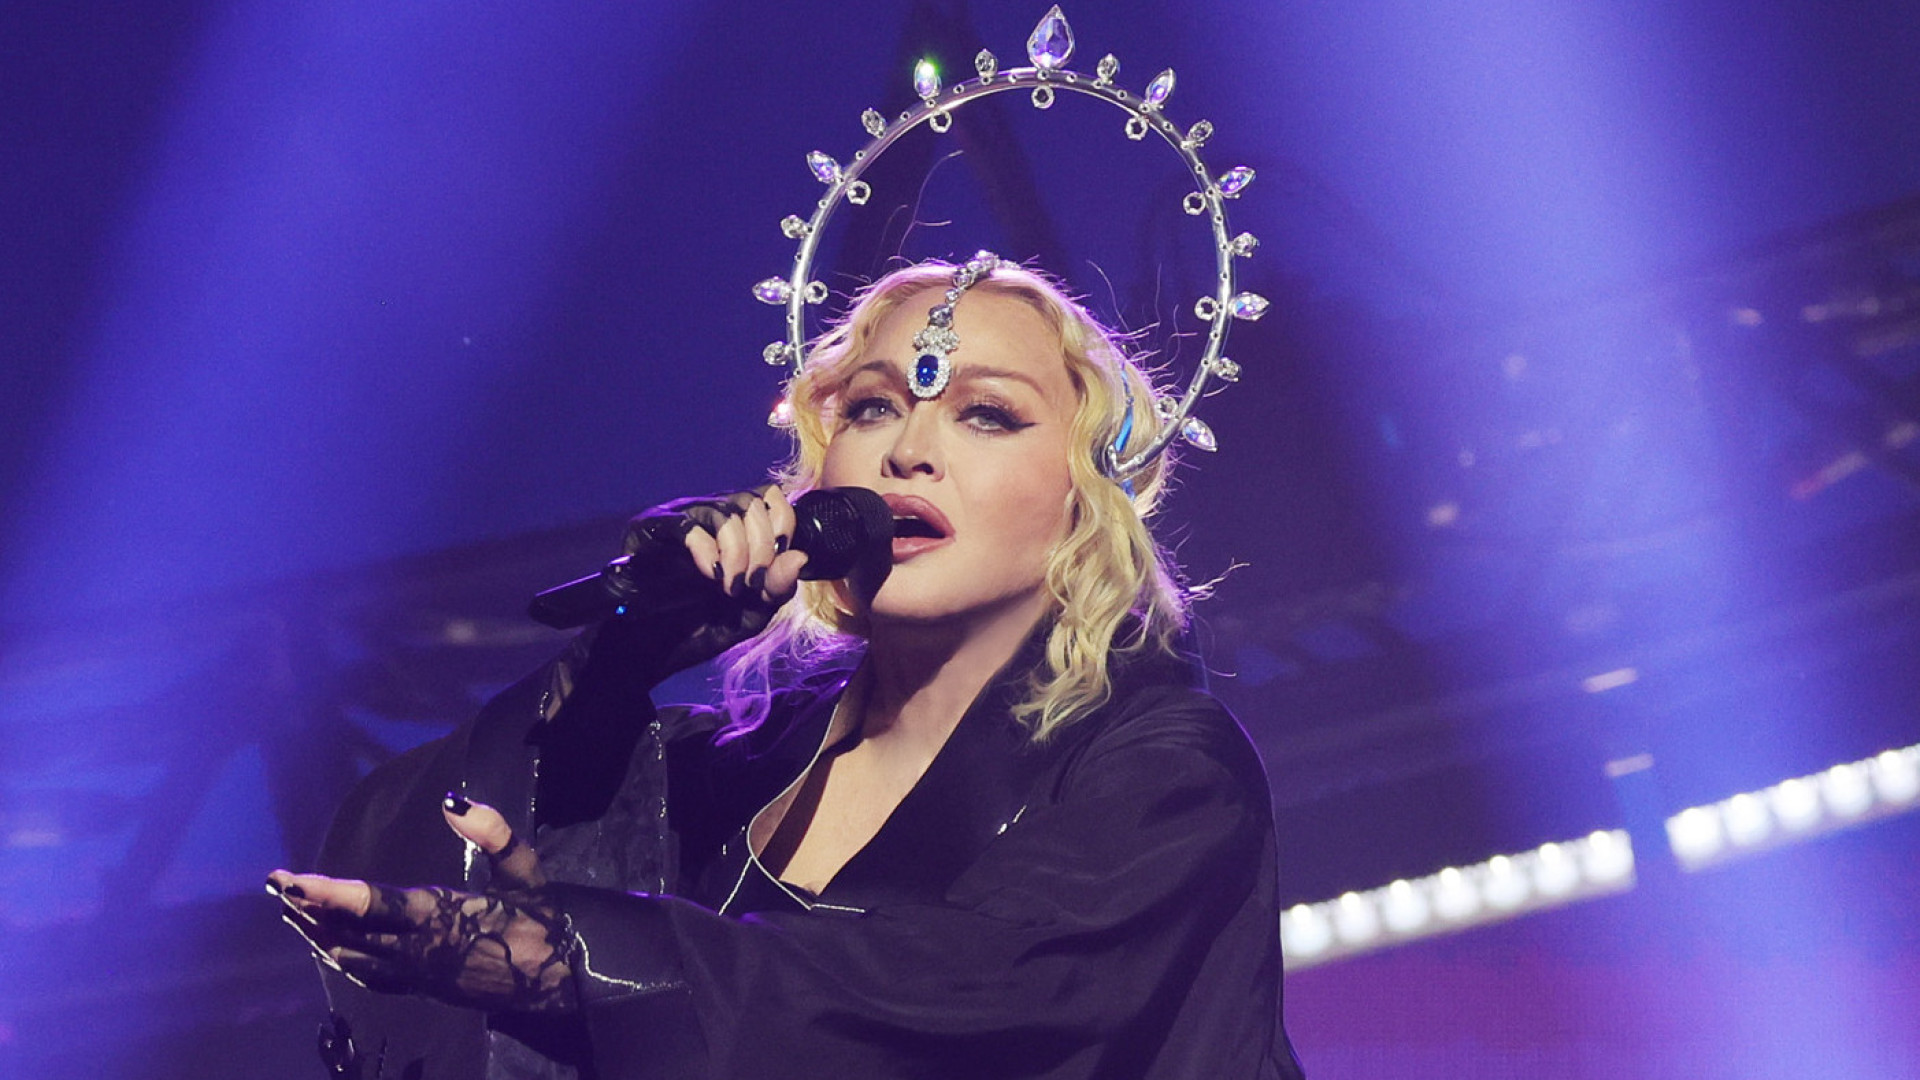 Globo arrecada R$ 50 milhões com transmissão de show de Madonna no Rio